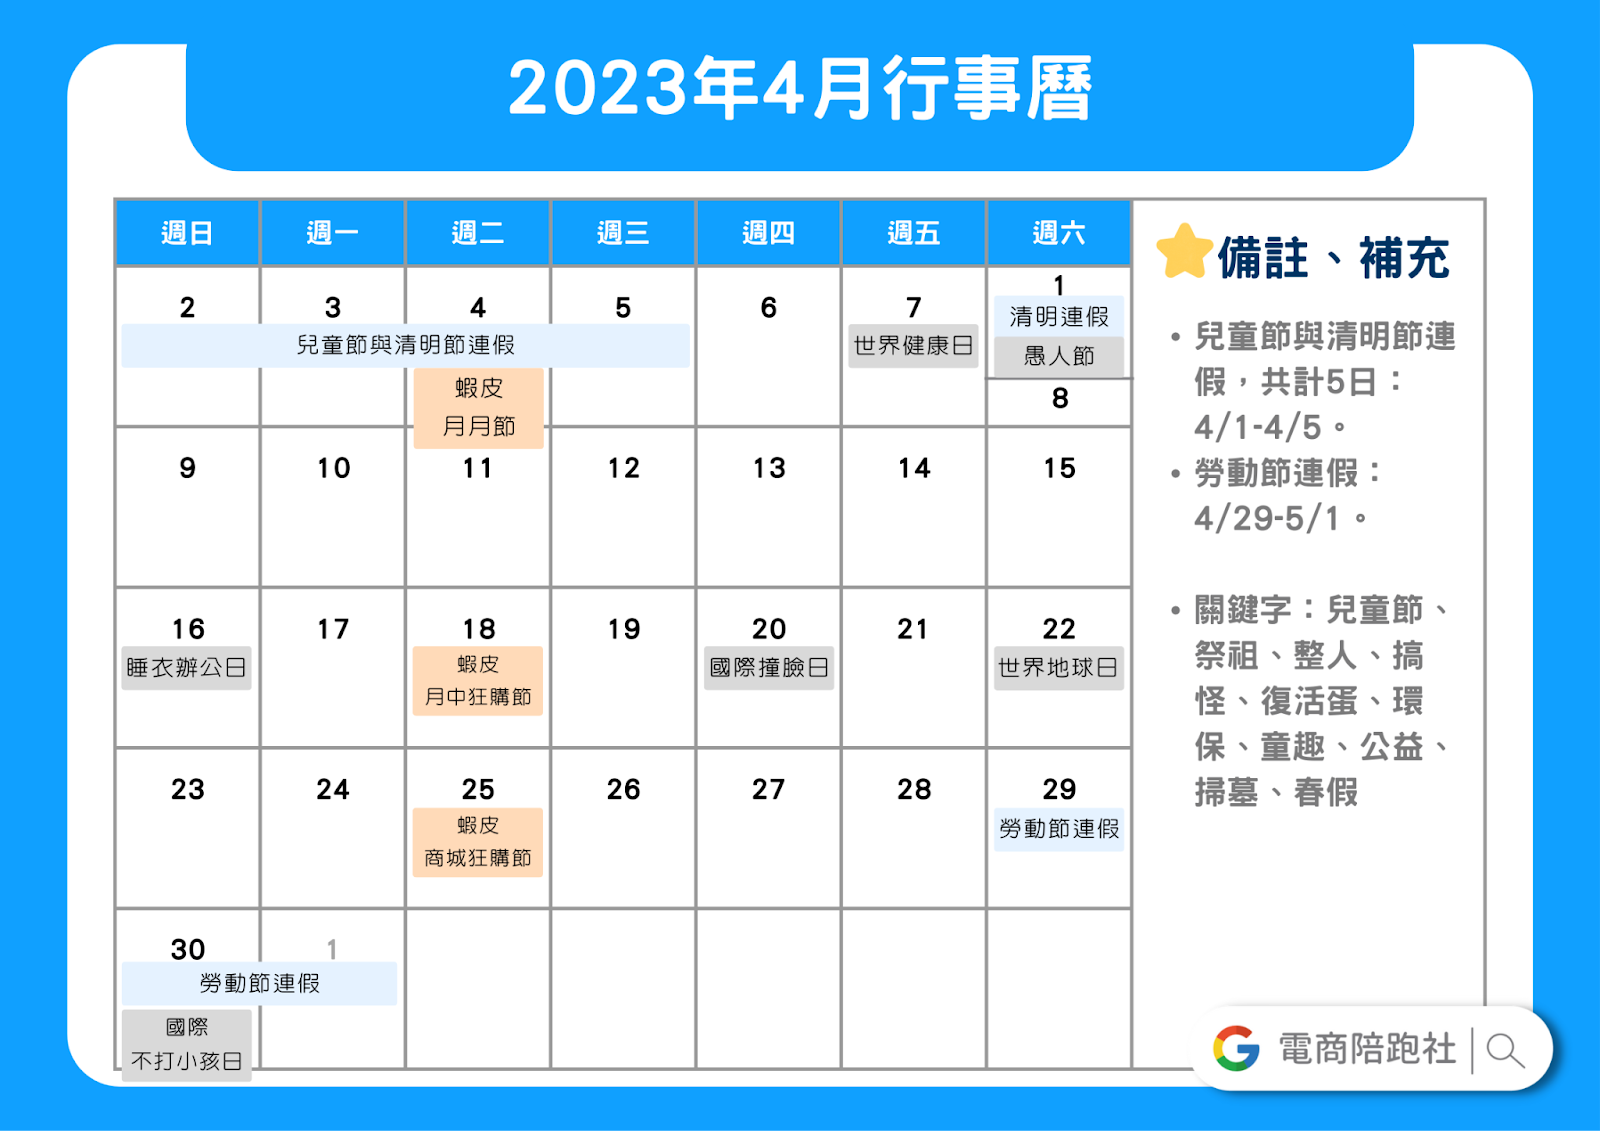 2023節慶行銷行事曆-4 月